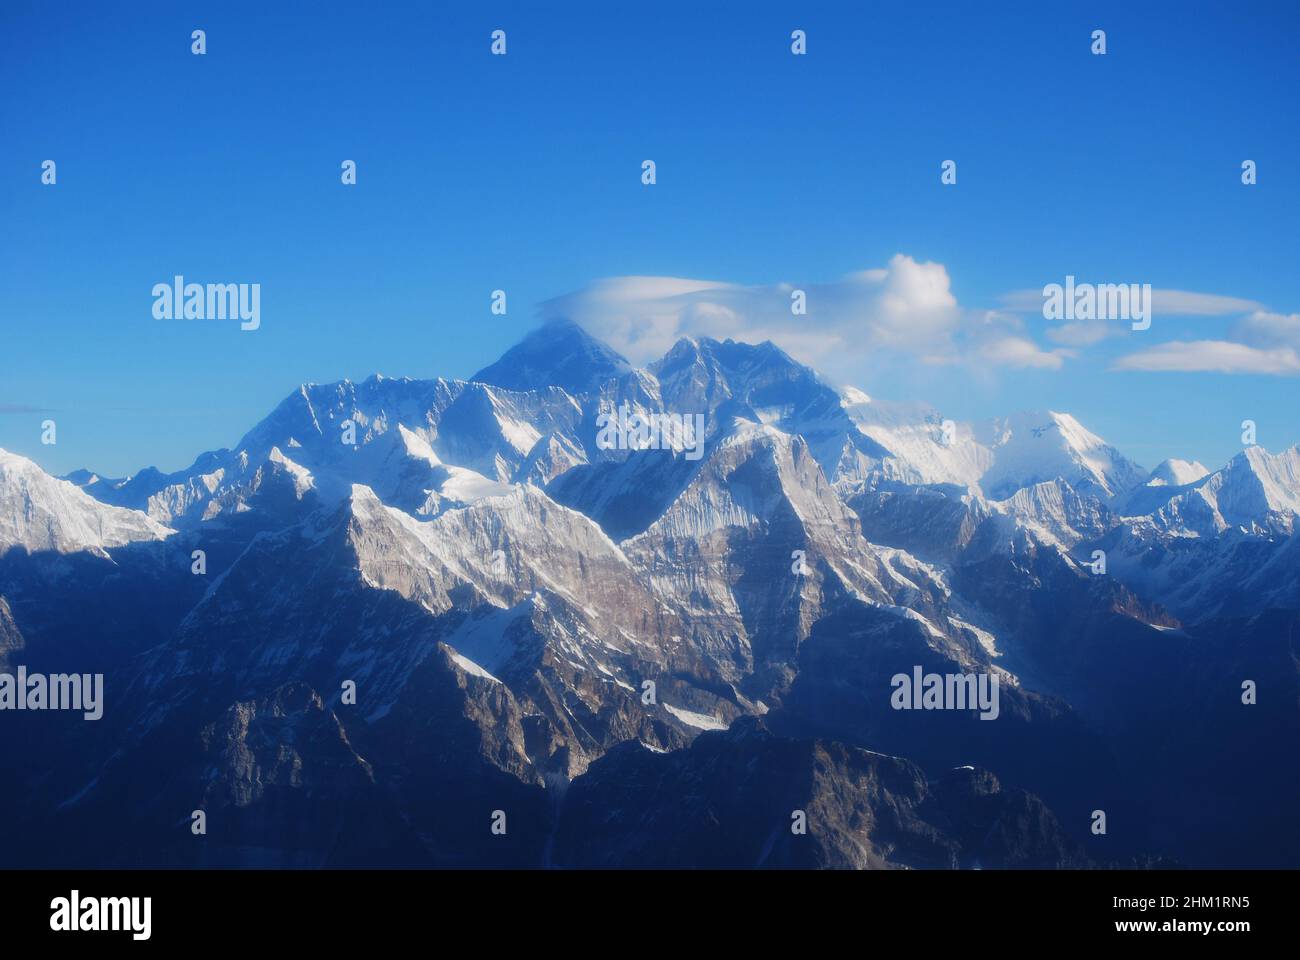 Der Mount Everest ist der höchste Berg der Erde über dem Meeresspiegel und liegt im Mahalangur Himal-Untergebiet des Himalaya. Stockfoto